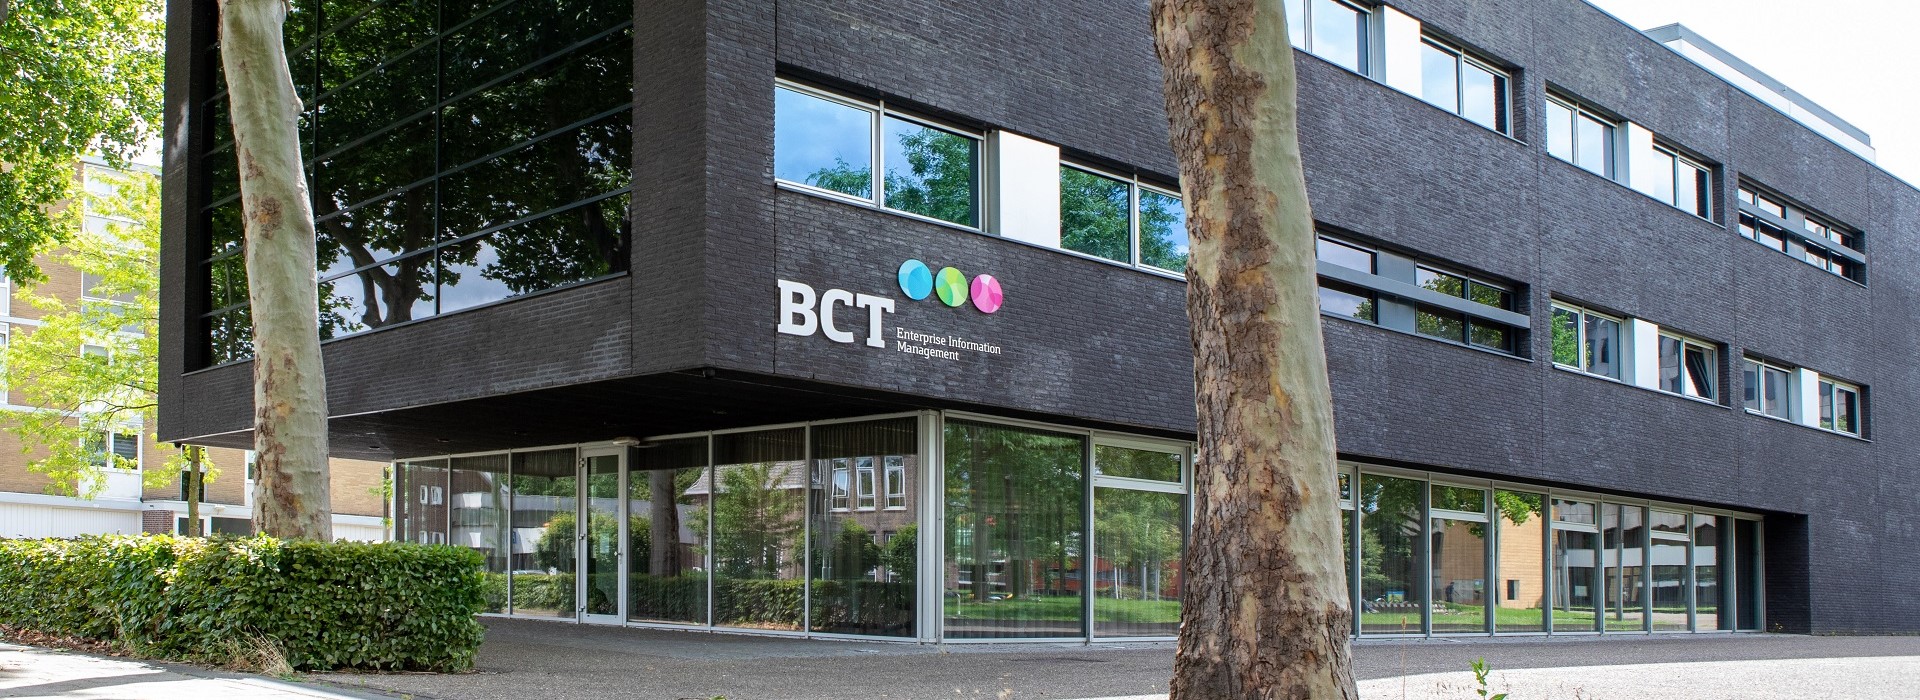 Meer informatie over BCT?